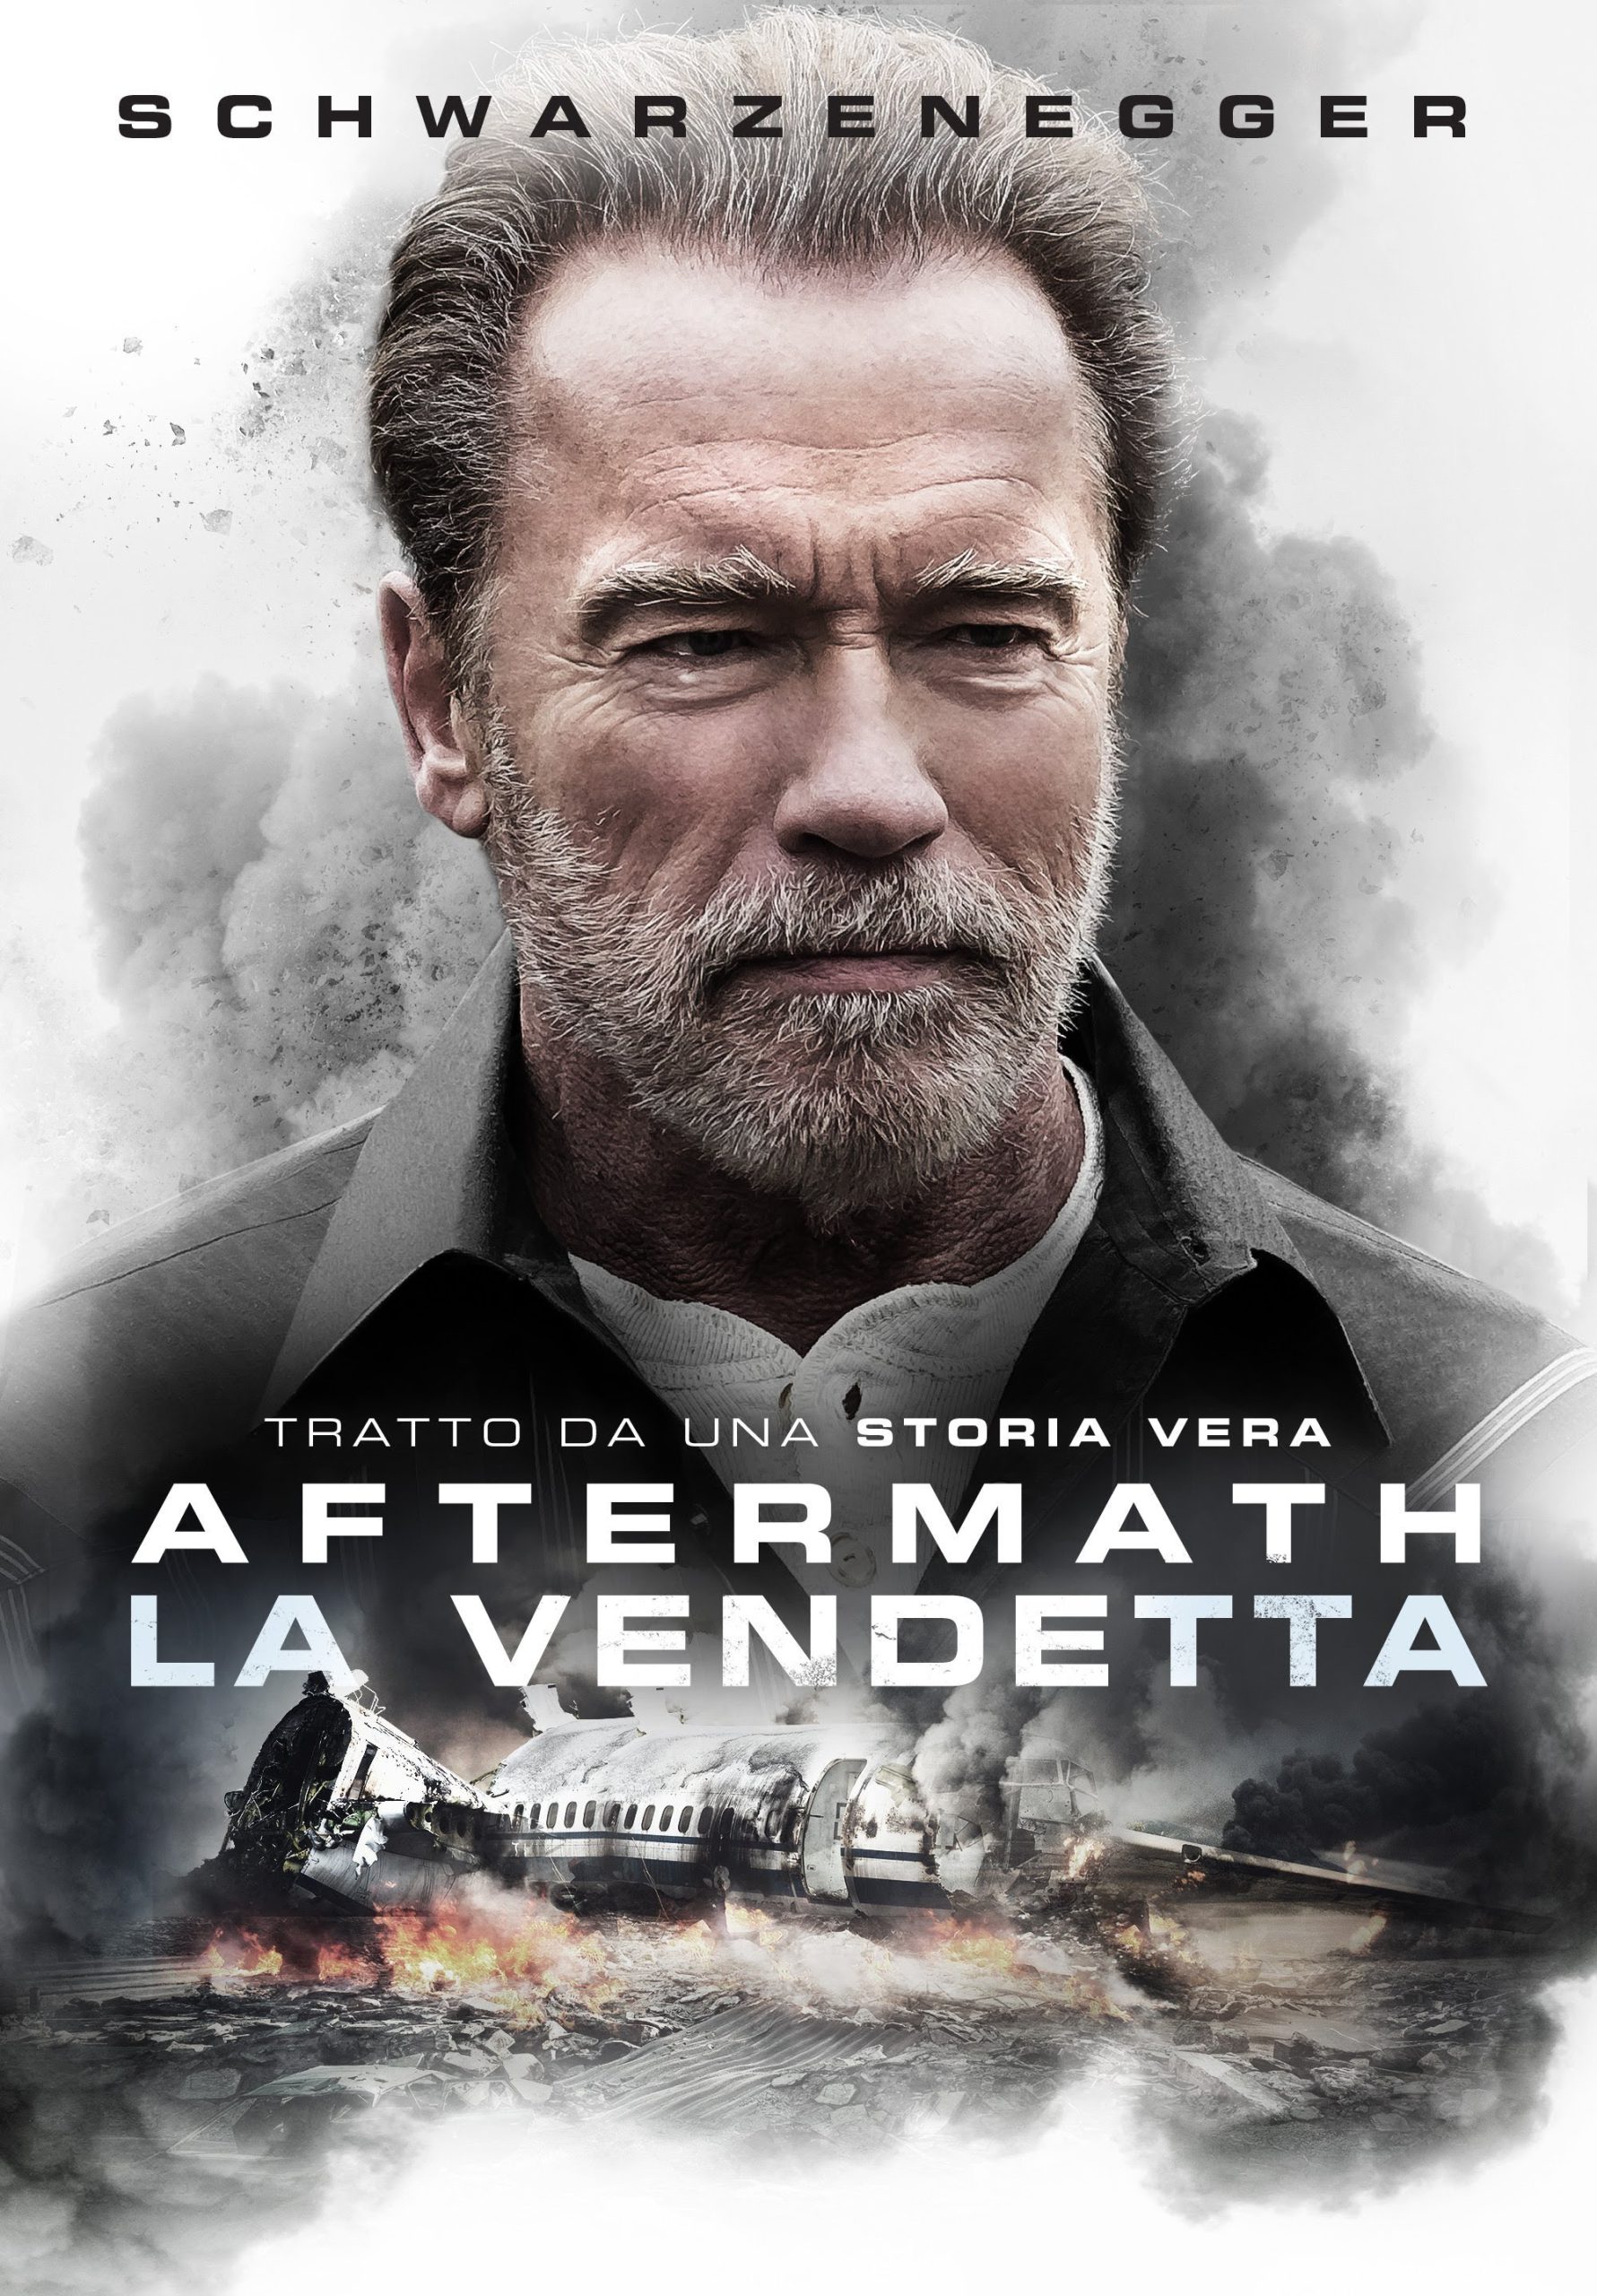 La vendetta – Aftermath [HD] (2017)